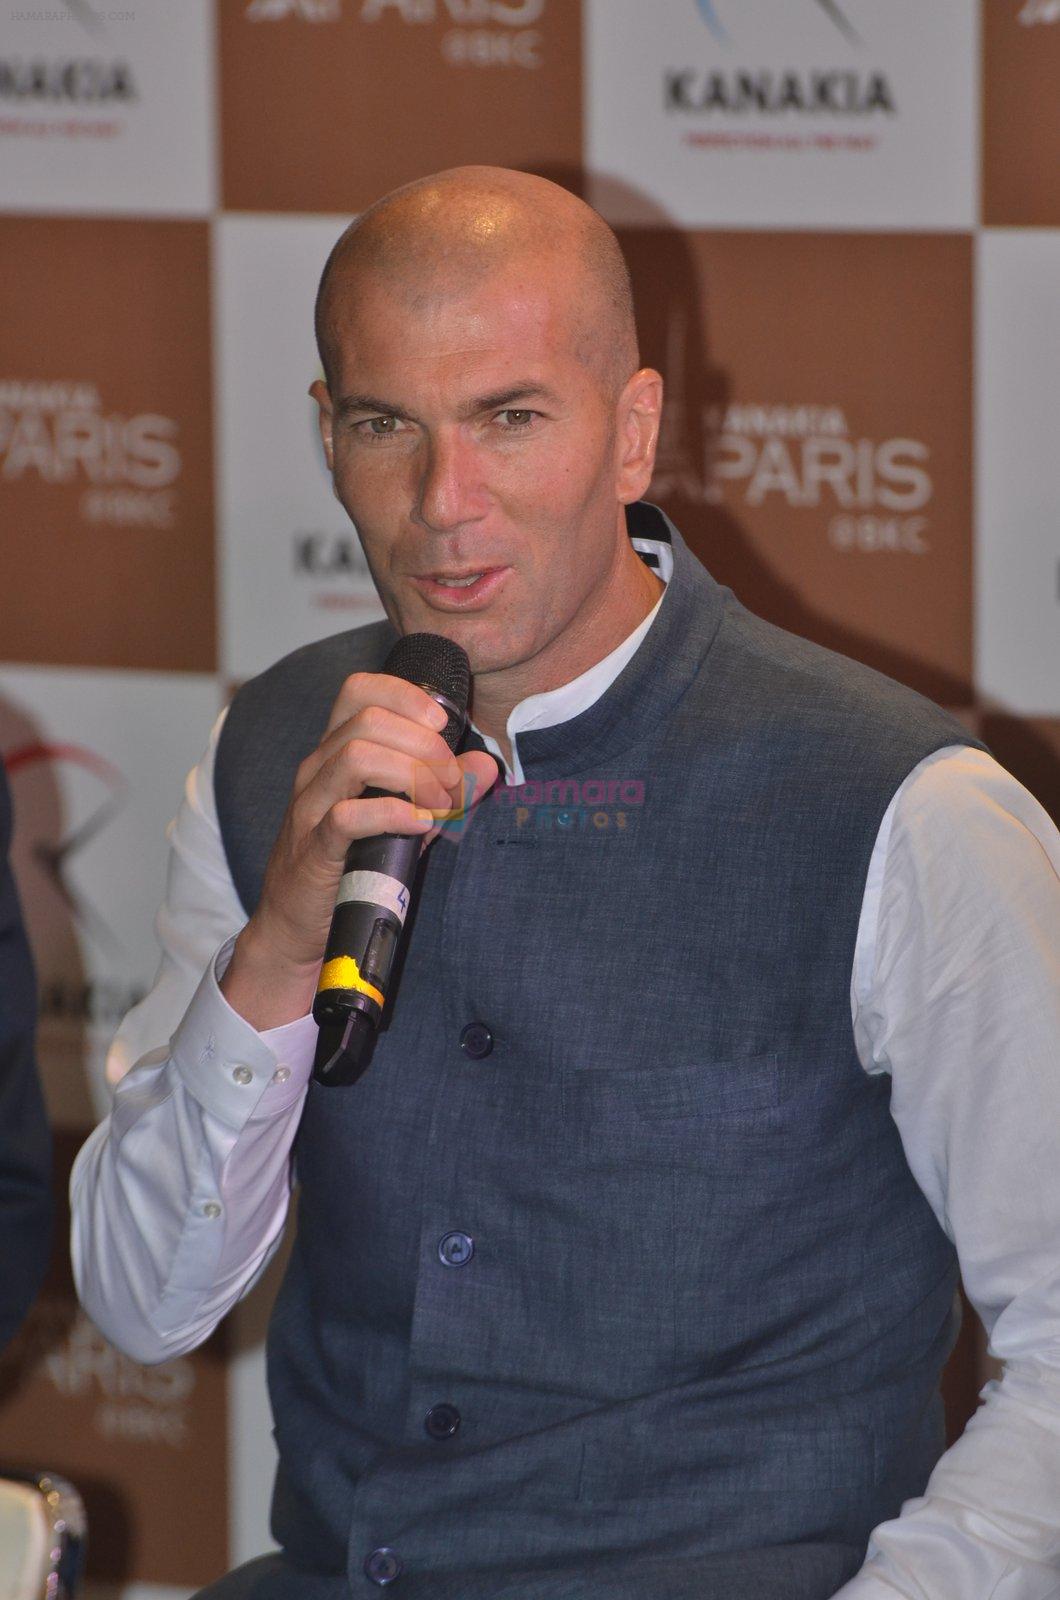 Zidane press meet on 10th June 2016